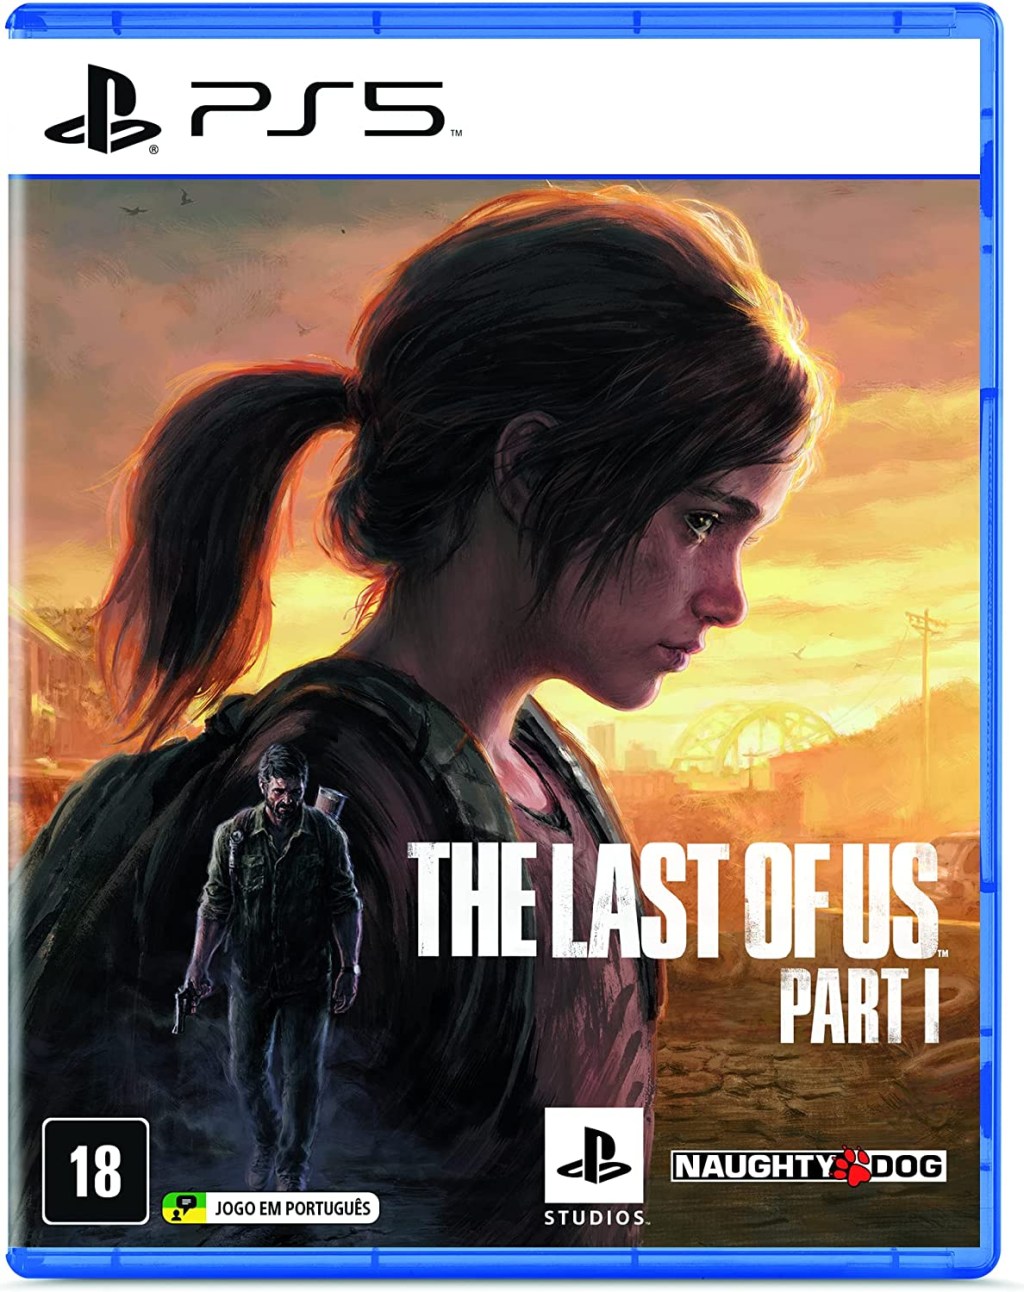 Episódio 8 de The Last of Us: diferenças entre jogo e série